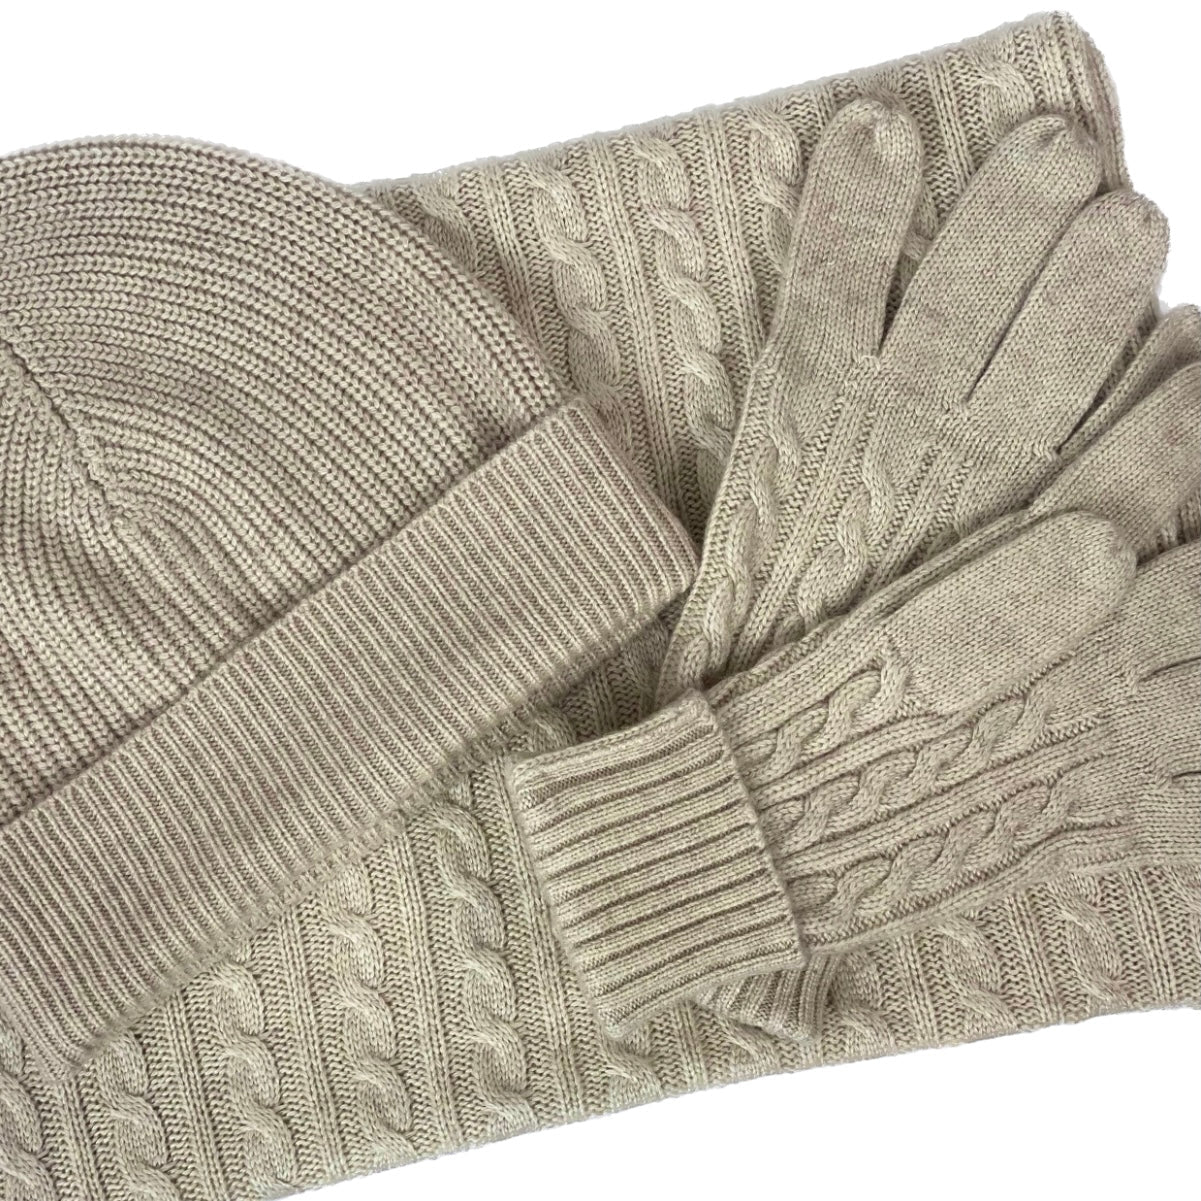 Cashmere Cable Knit Gloves Signature Cashmere